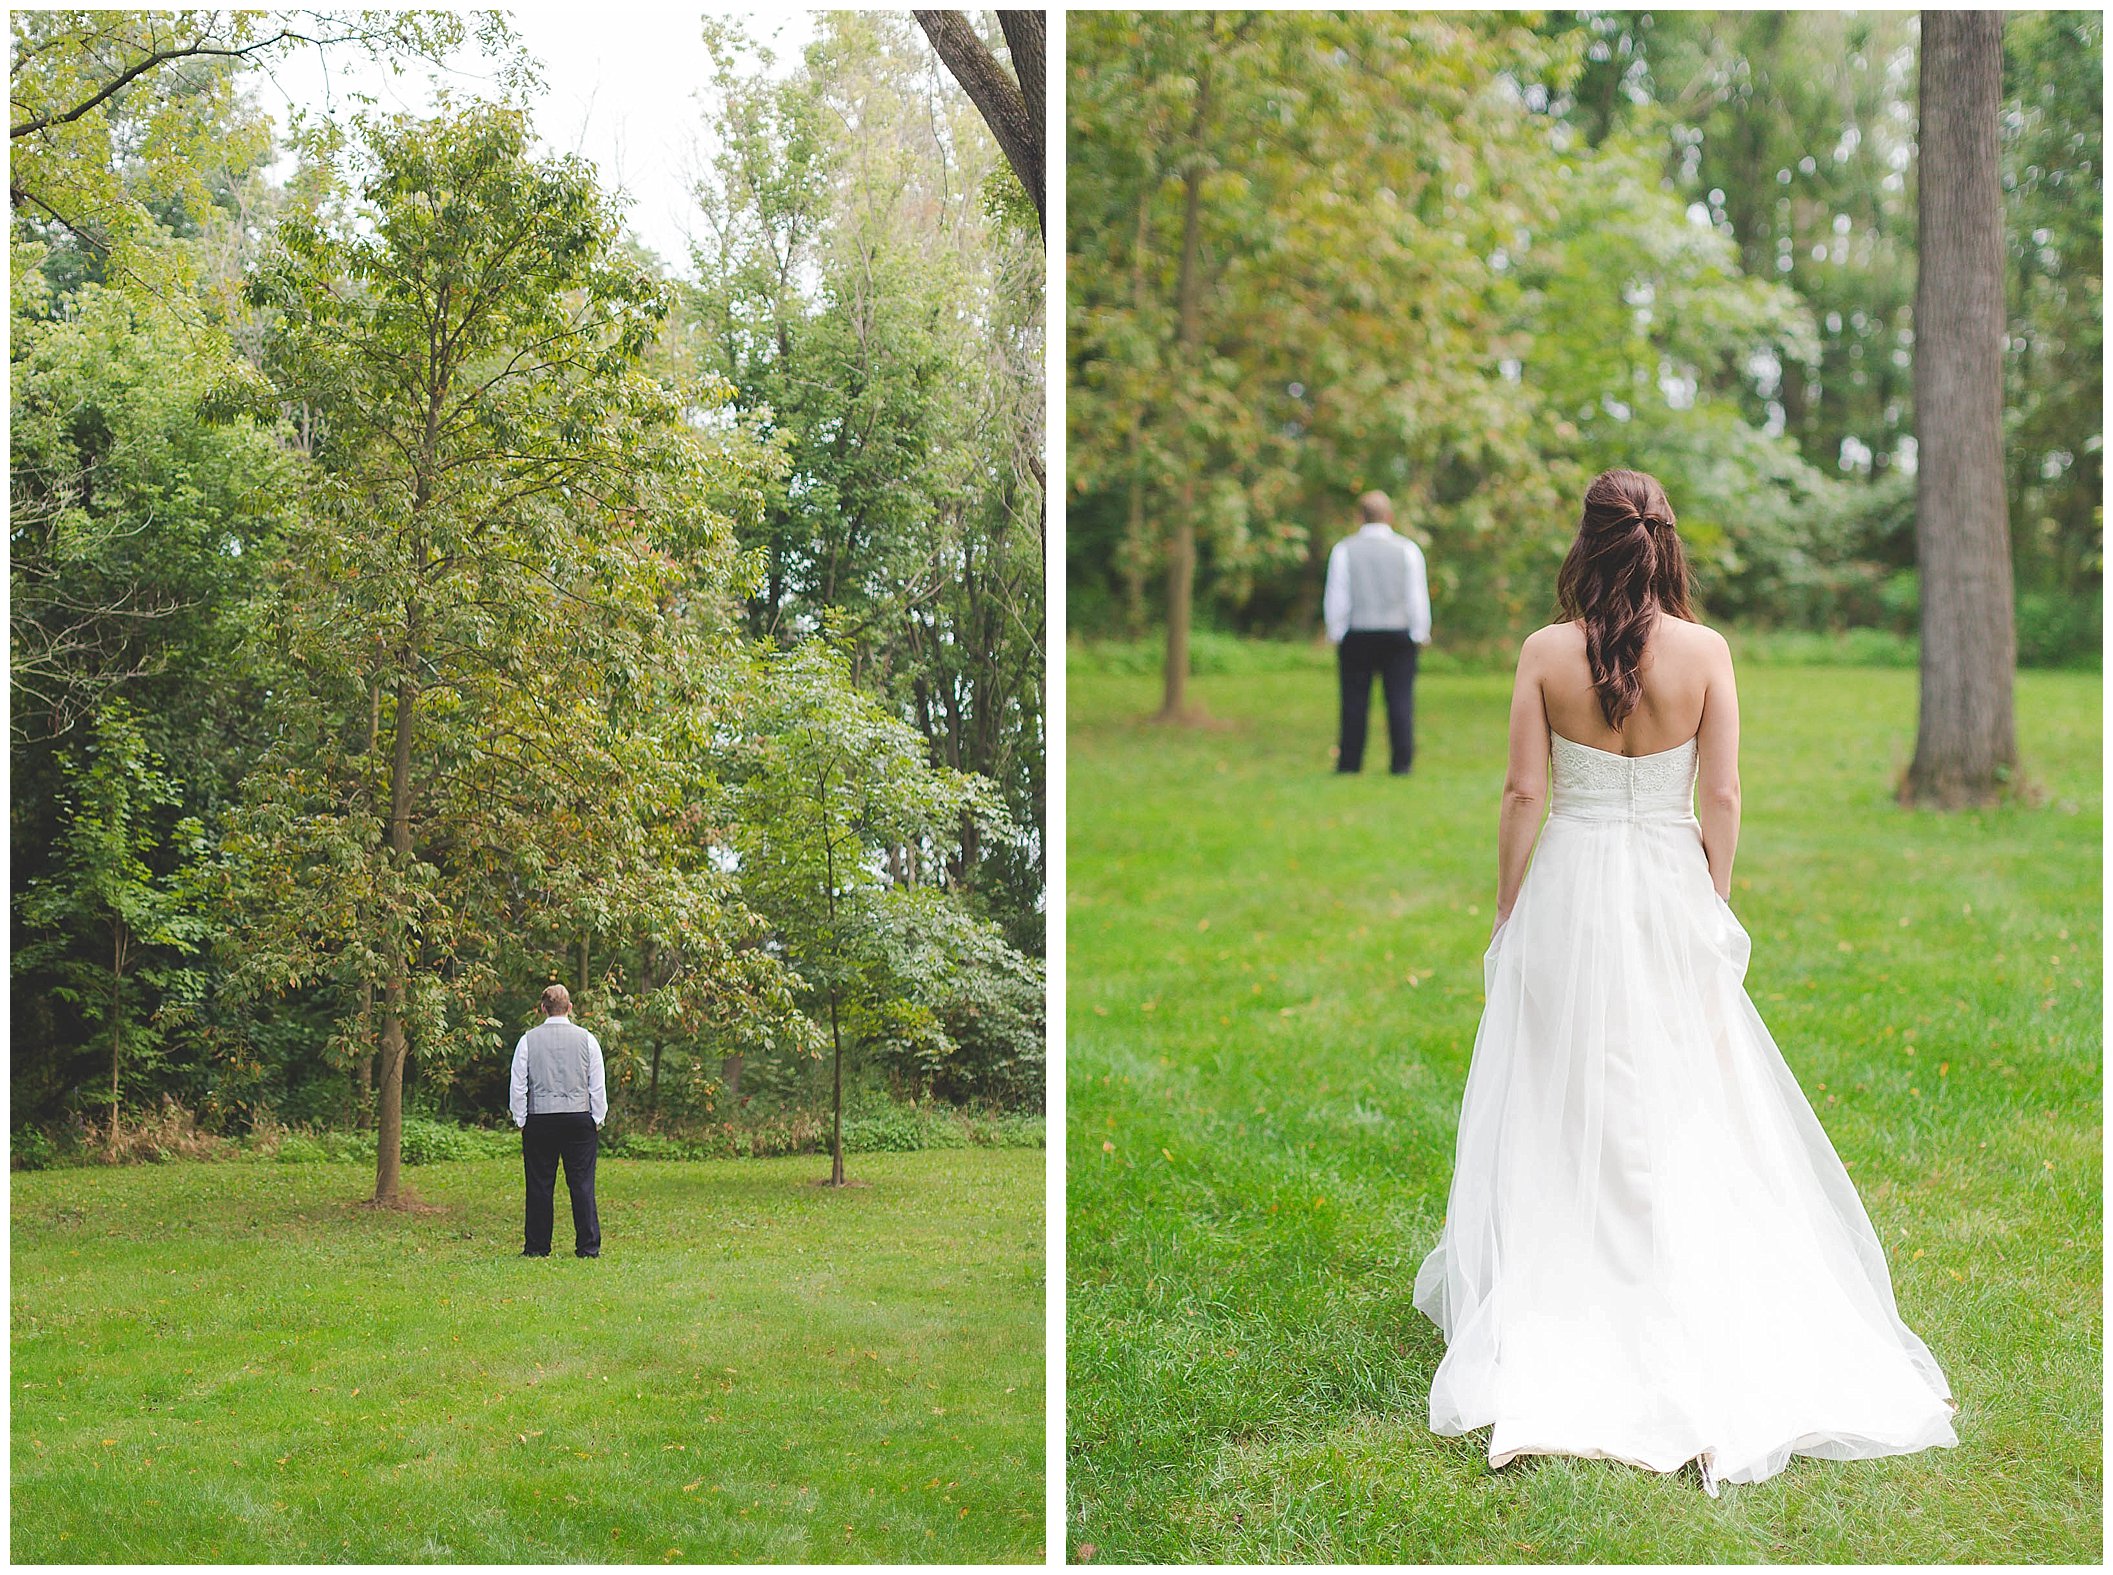 Stunning backyard wedding with twinkly lights, Fort Wayne Indiana Wedding Photographer_0029.jpg